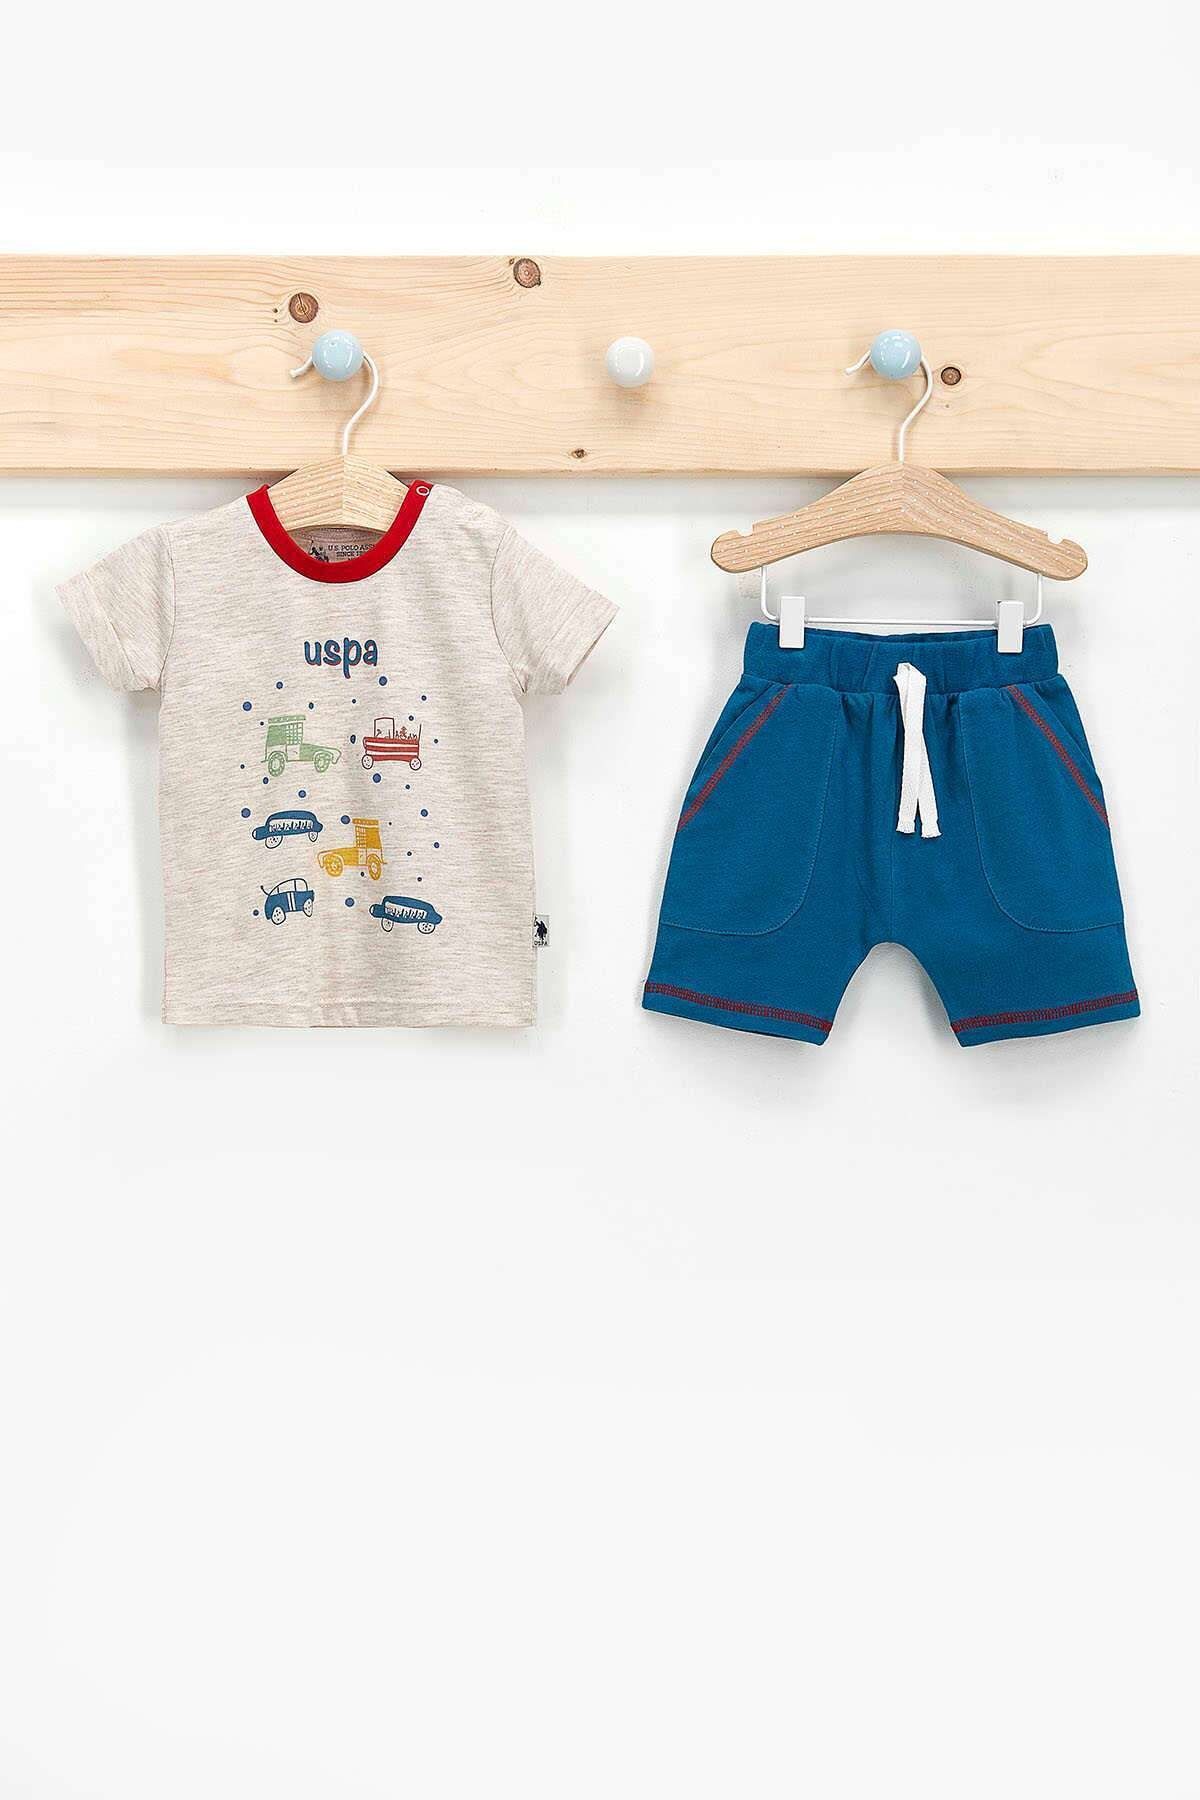 U.S. Polo Assn. Erkek Bebek Lattemelanj Lisanslı Fun Adventure T-shirt